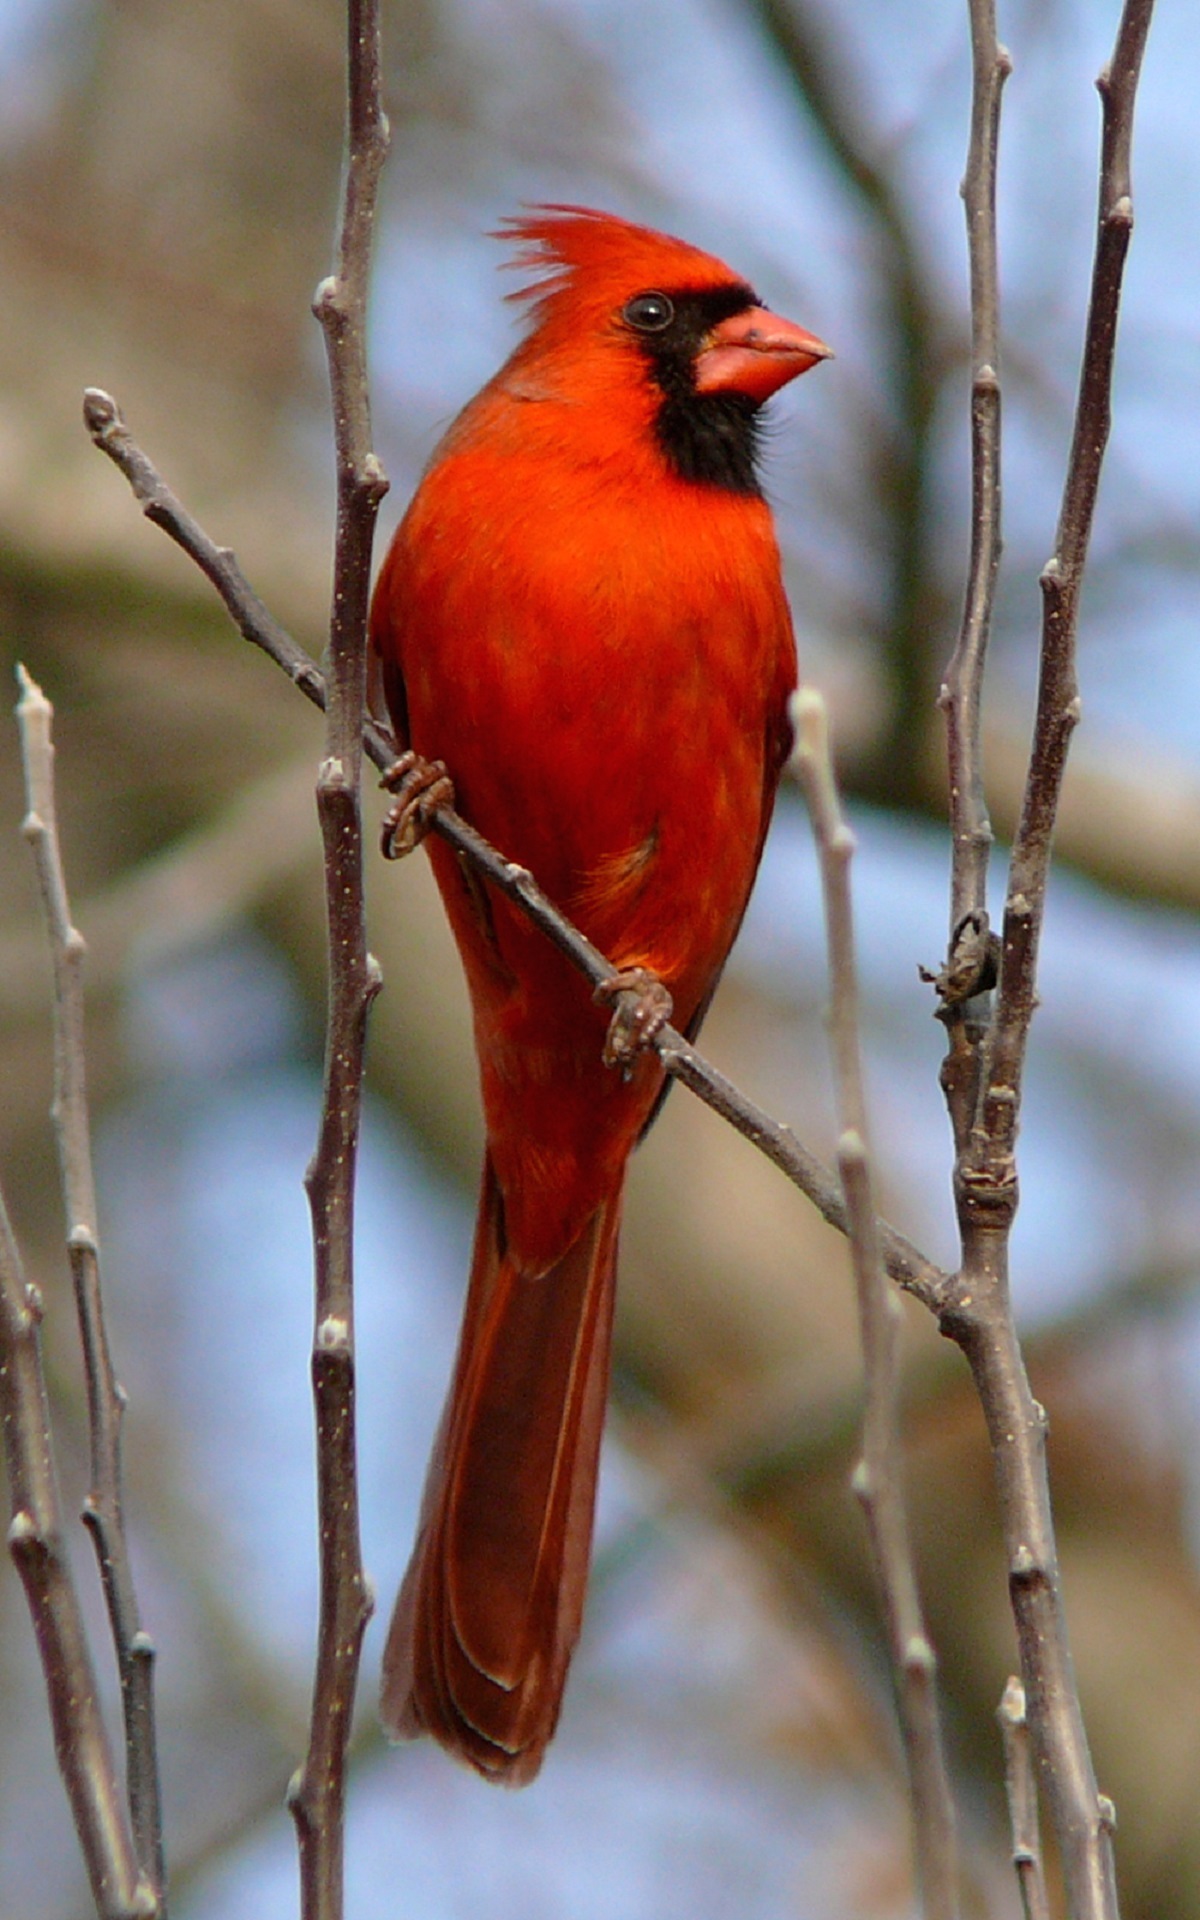 Red cardinal photo